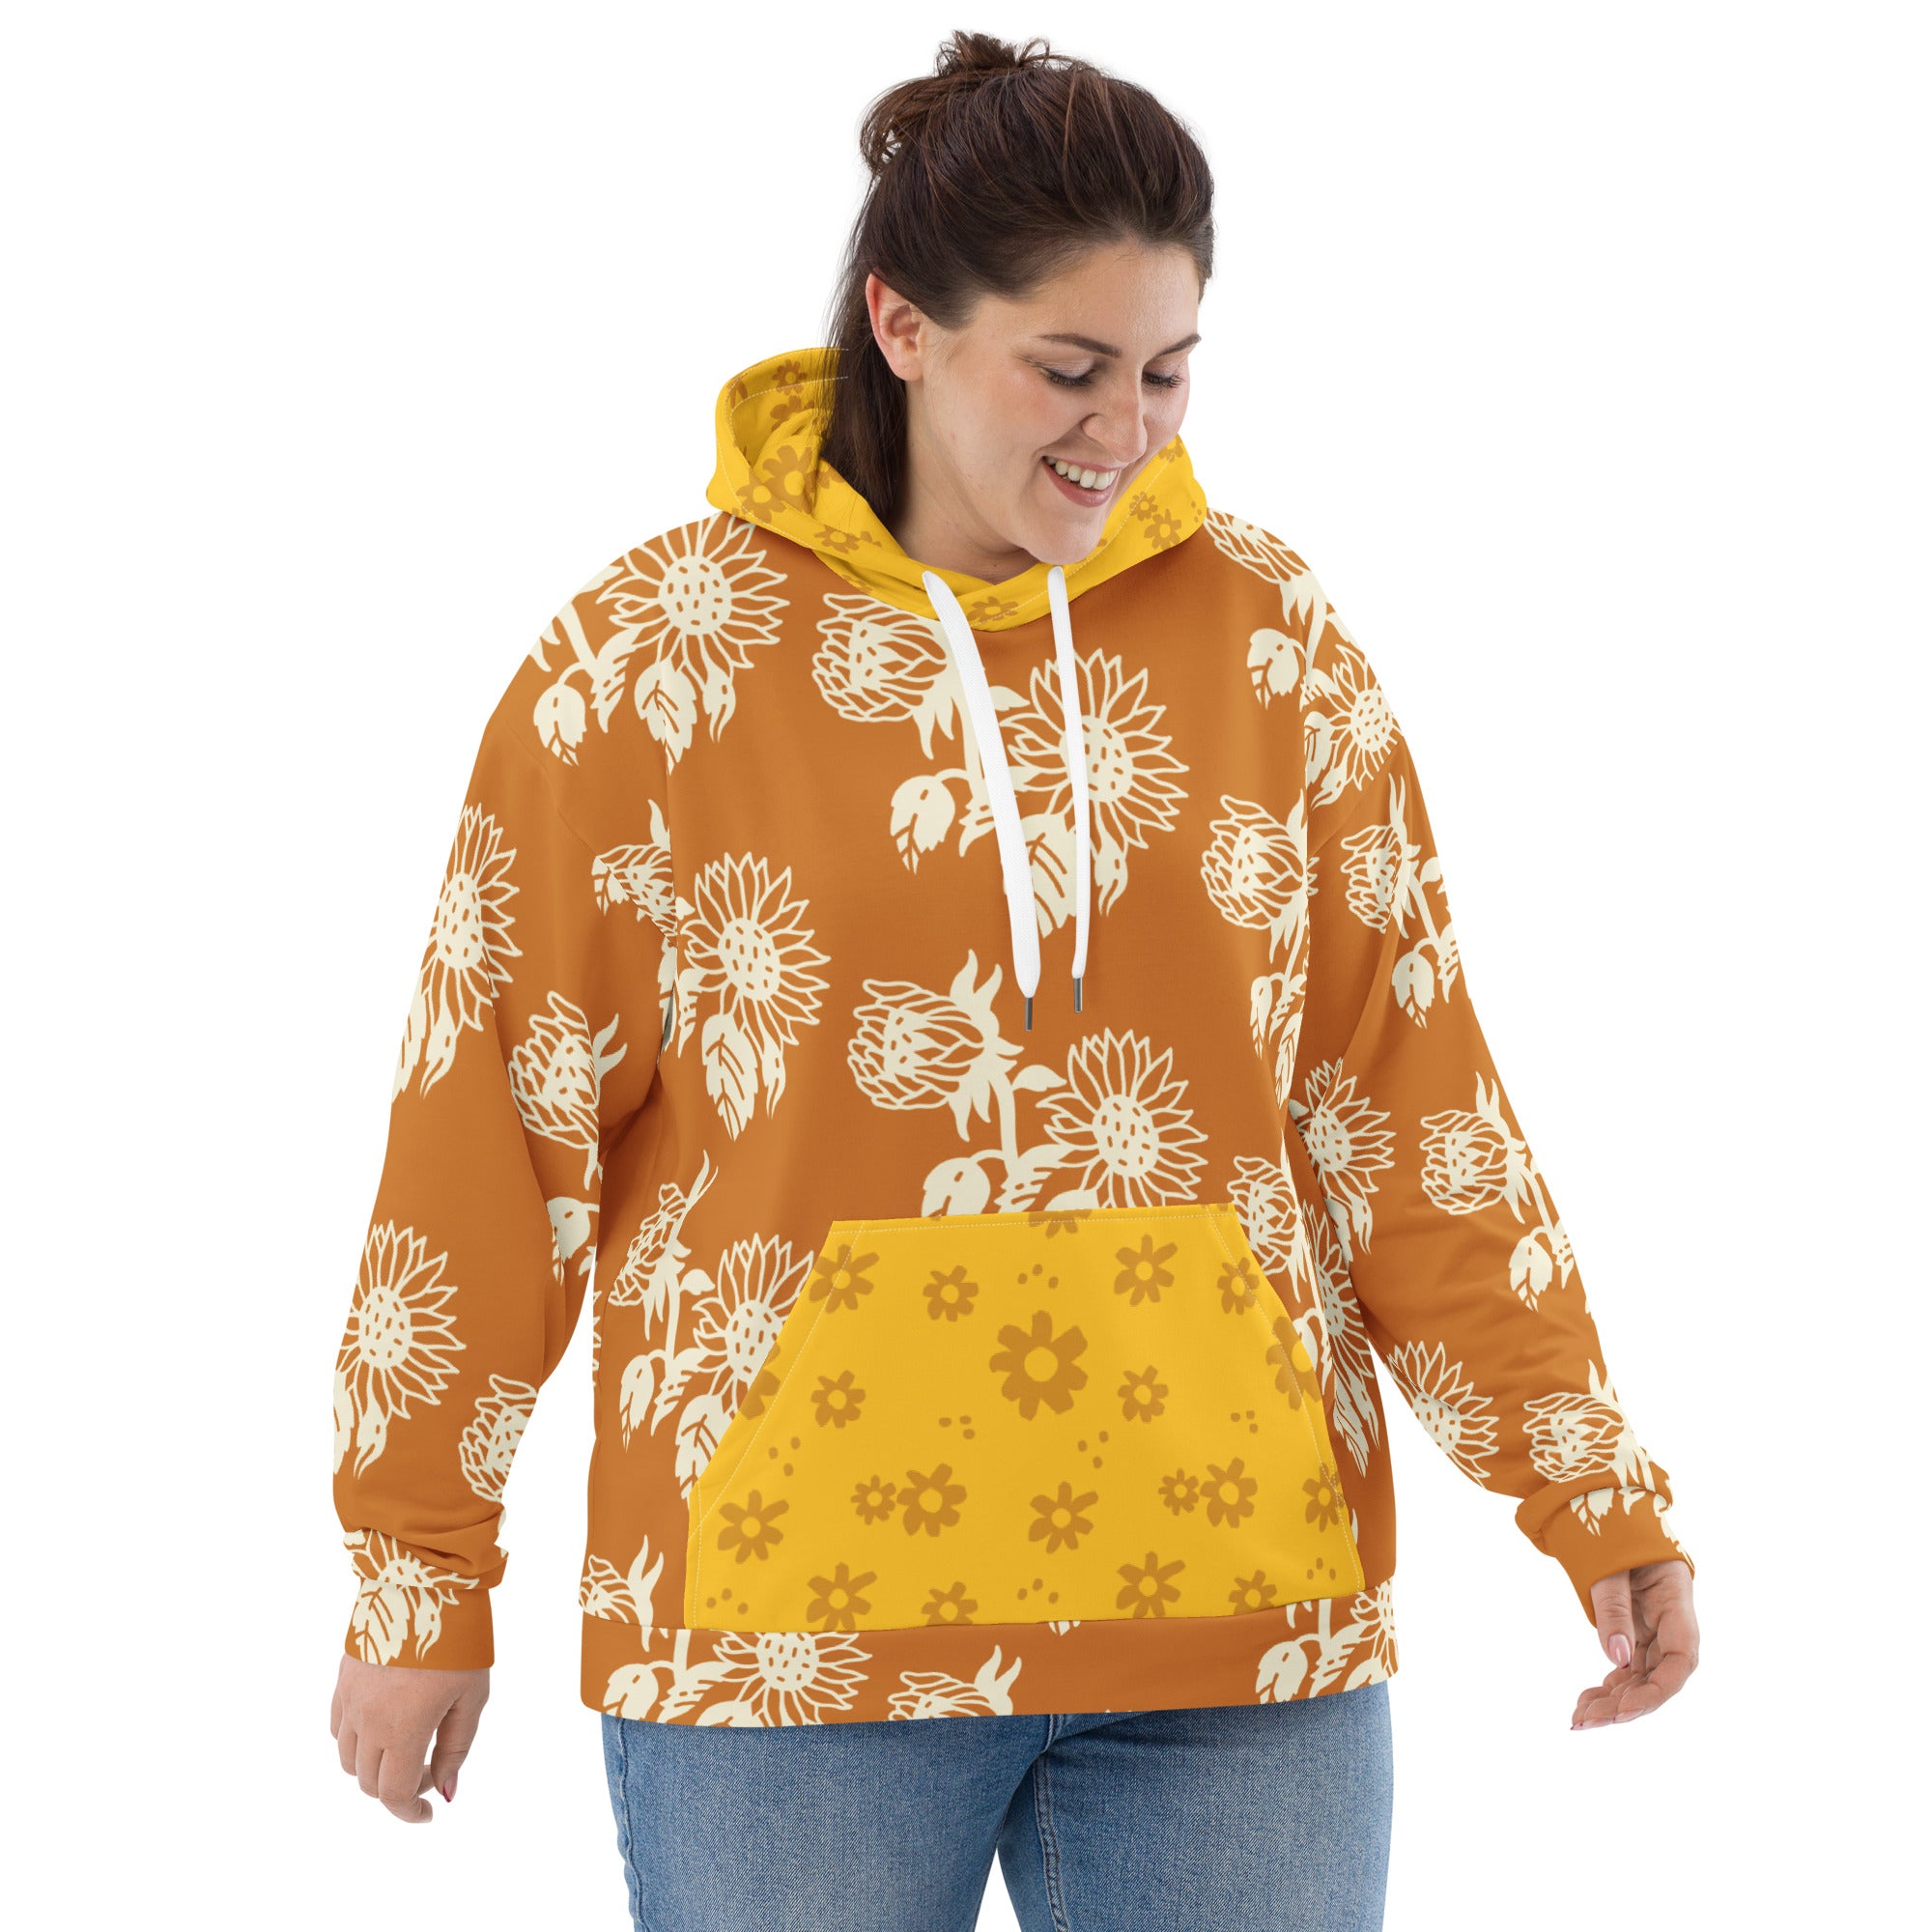 Buy All Tan Unisex Hoodie - Comfortable Hooded Sweatshirt